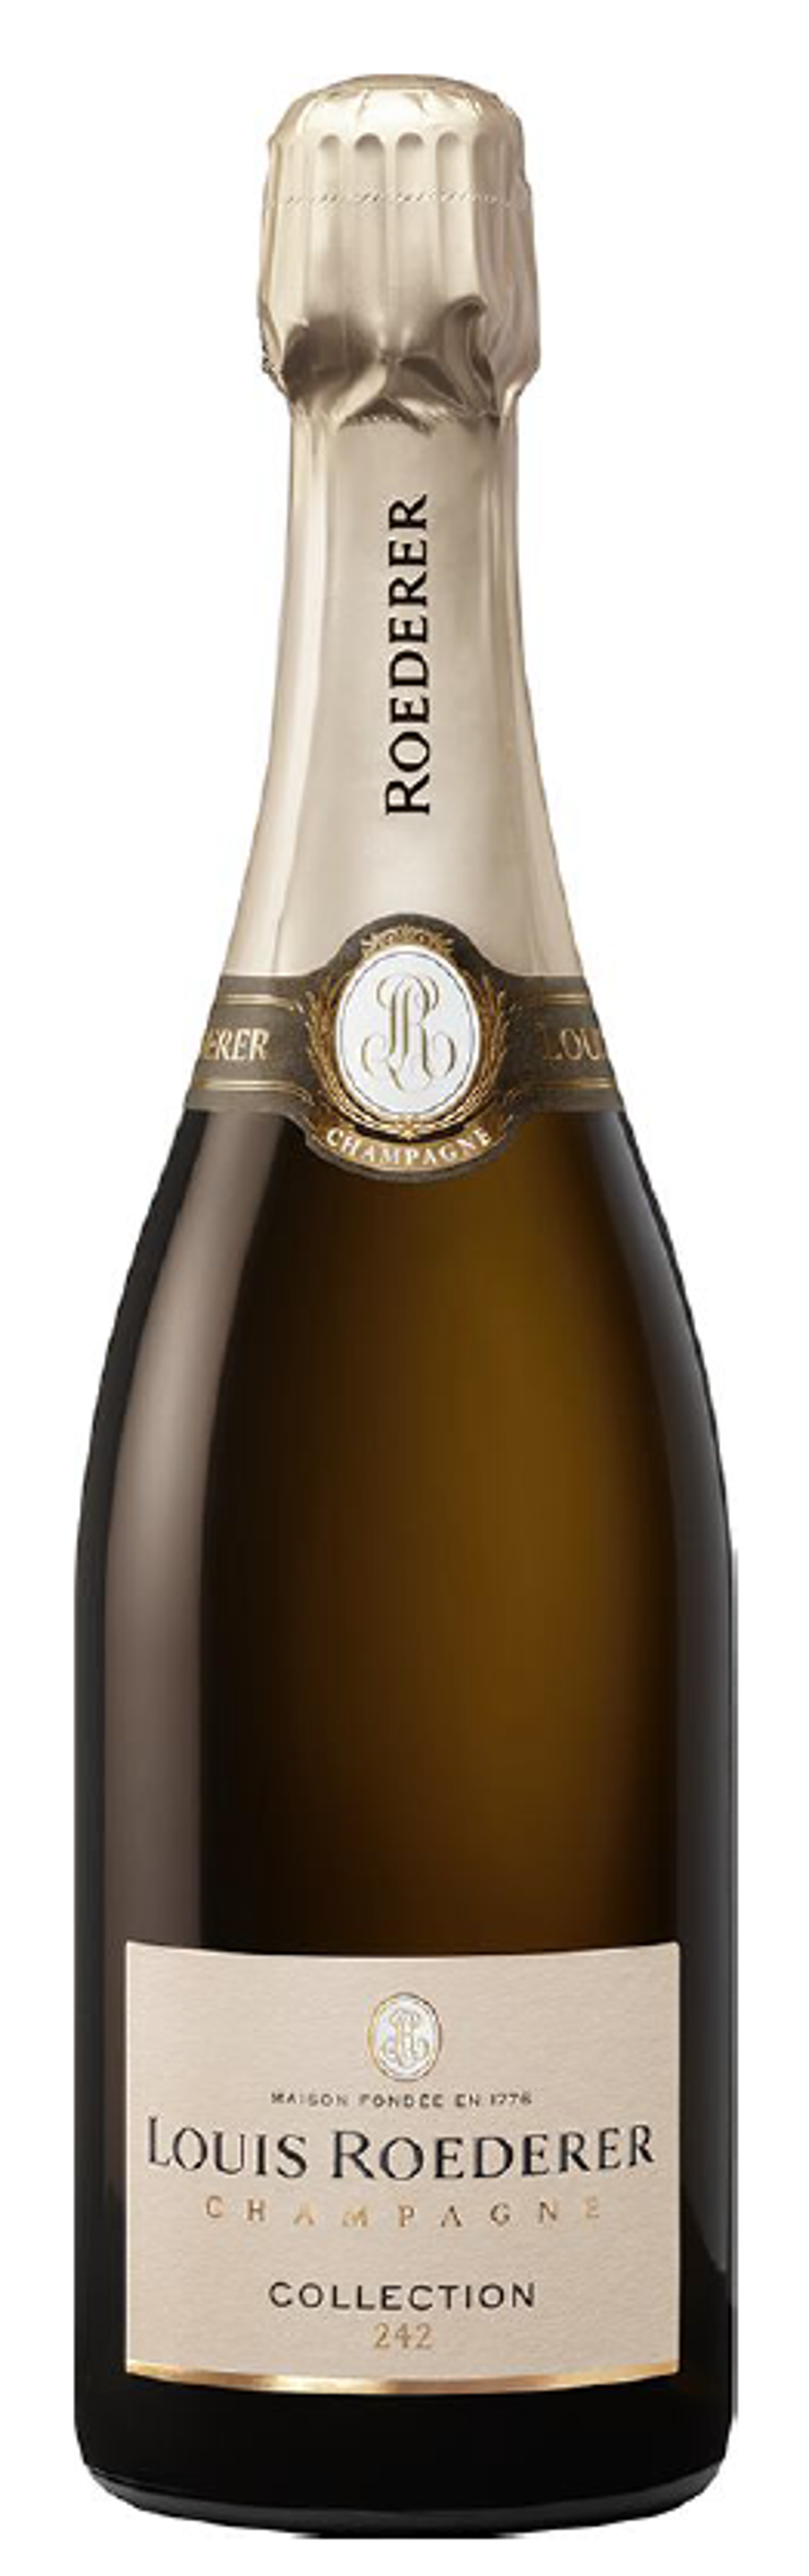 Louis Roederer Champagne Brut Premier